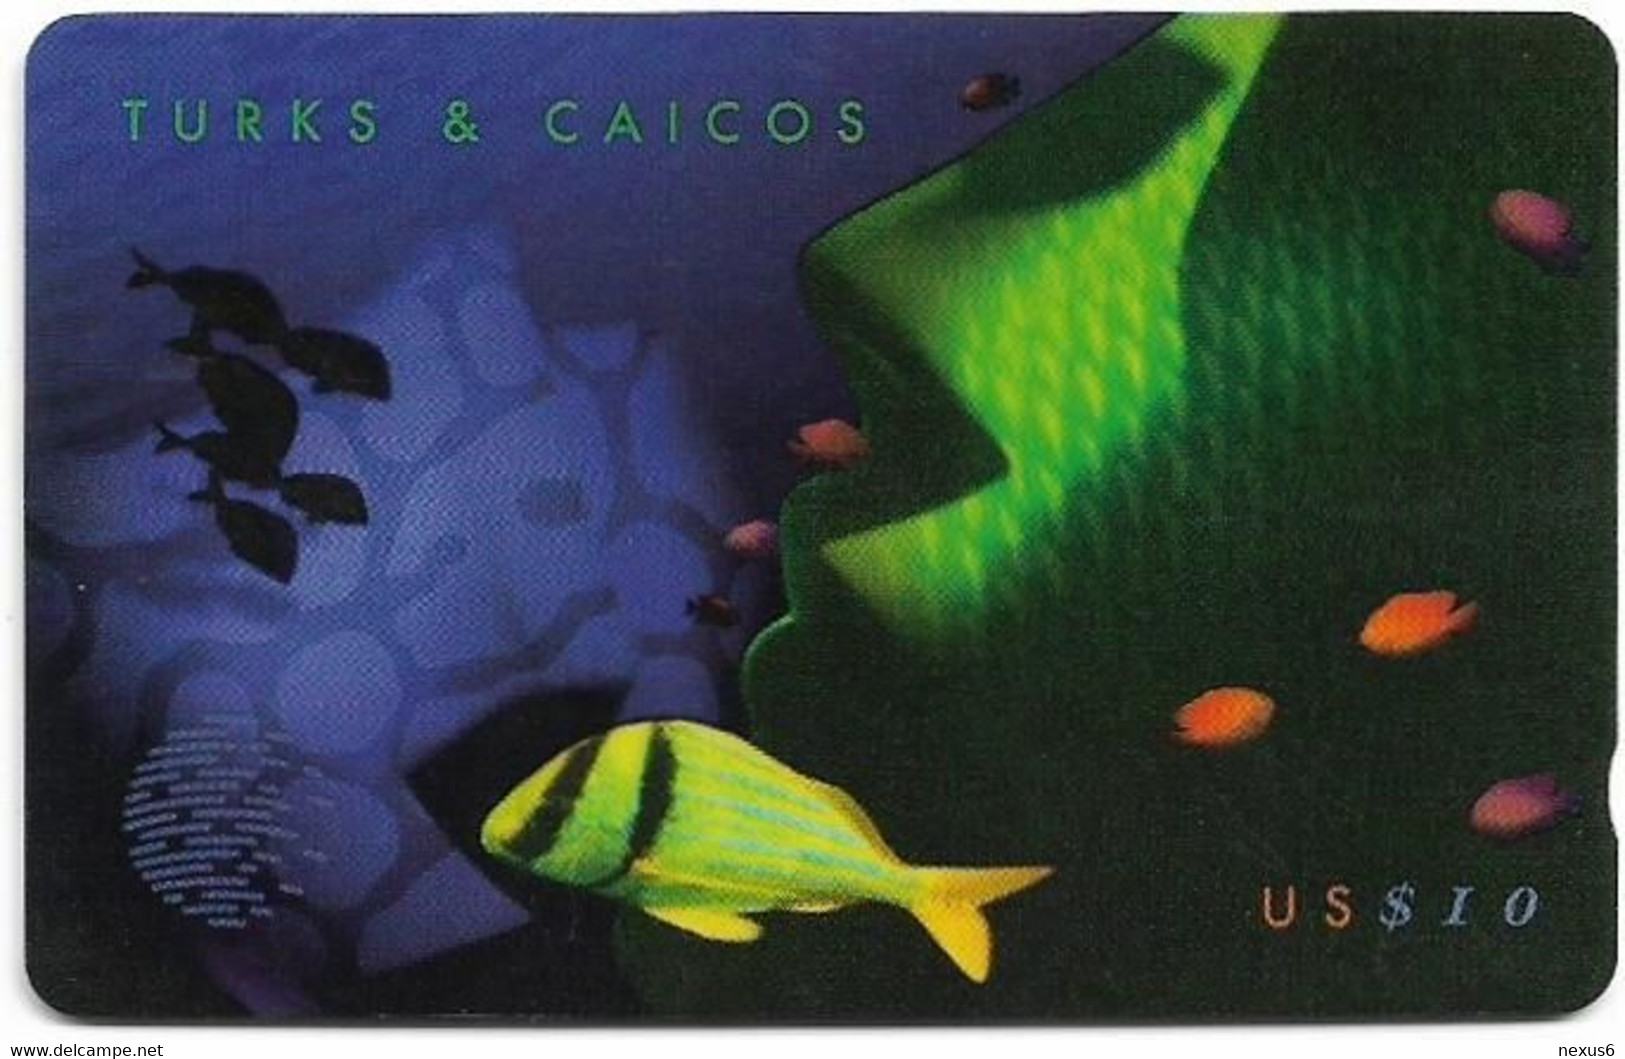 Turks & Caicos - C&W (GPT) - Green Fish (Puzzle 2/3) - 158CTCB - 1997, 10$, 10.000ex, Used - Turks & Caicos (Islands)